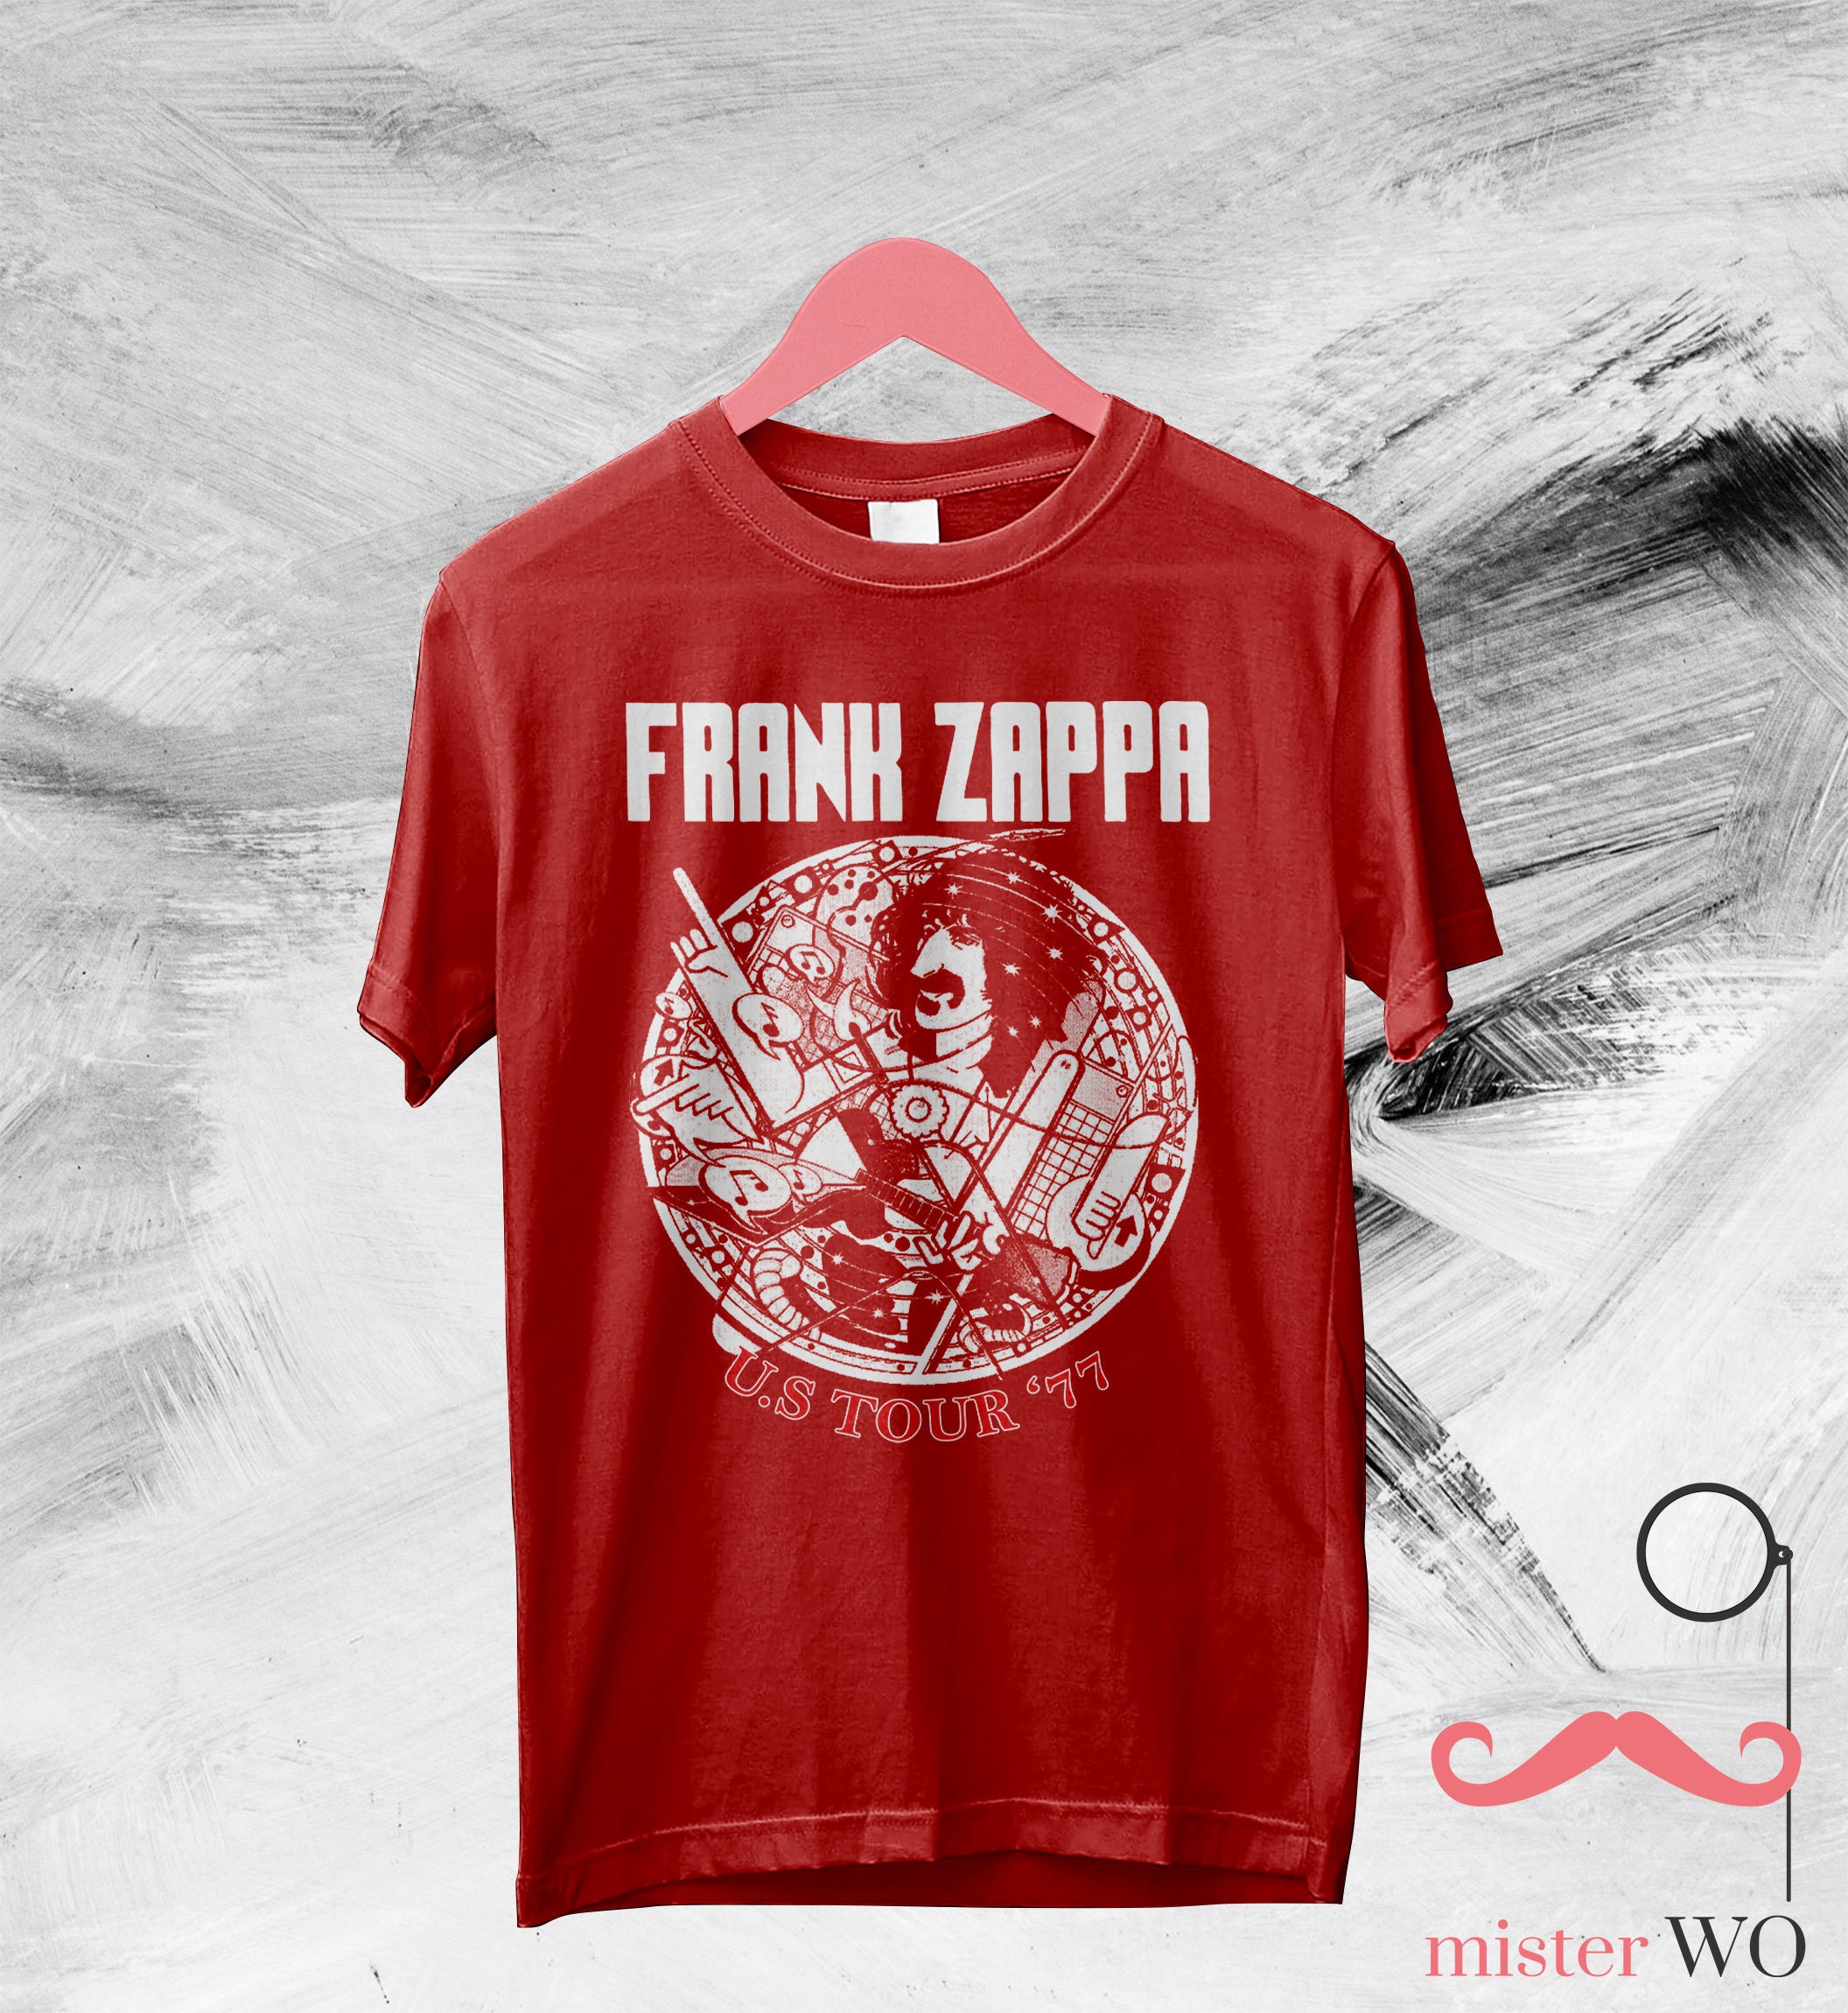 Frank Zappa US Tour '77 T-Shirt - Frank Zappa Shirt, Frank Zappa Tour, Music Shirt, Rock Music Shirt, Gift for Fan